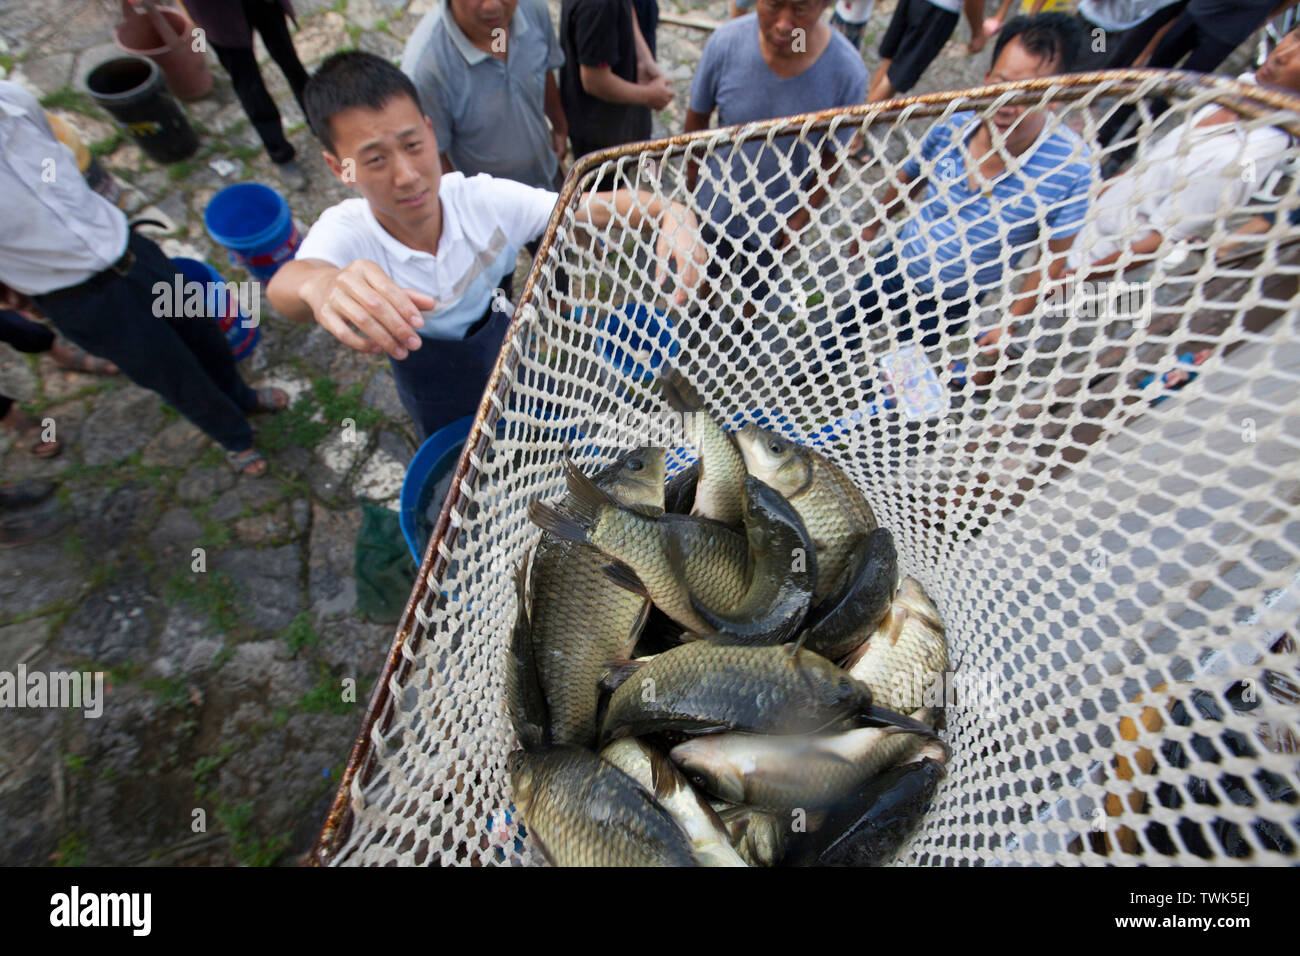 Bijie Chinas Provinz Guizhou. Juni, 2019 21. Dorfbewohner erhalten Fische in Jiefang Dorf Hongshui Stadt im Kreis Qianxi Bijie Stadt, im Südwesten Chinas Provinz Guizhou, 21. Juni 2019. Qianxi County geführte Landwirte Fisch, Frosch und Garnelen im Reisfeld zu heben die Qualität von Reis zu verbessern und die Einkommen der Landwirte zu erhöhen. Credit: Shi Kaixin/Xinhua/Alamy leben Nachrichten Stockfoto